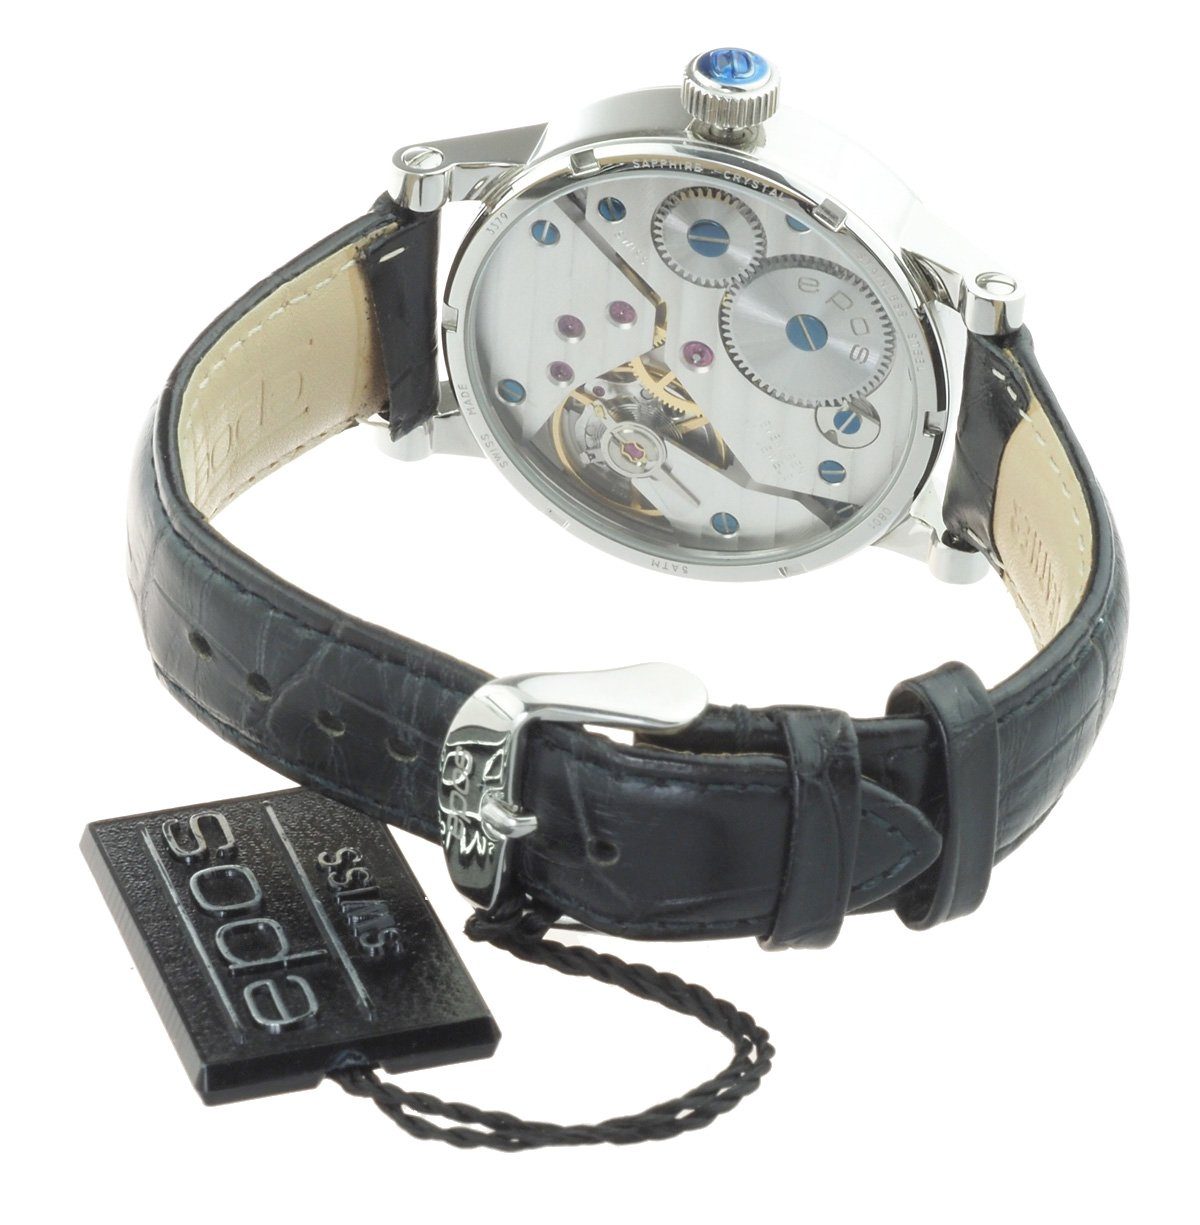 Sophisticated 3379.688.20.58.25 Swiss Handaufzug, Made retrograde EPOS Mechanische Minutenanzeige Uhr Herren Uhr